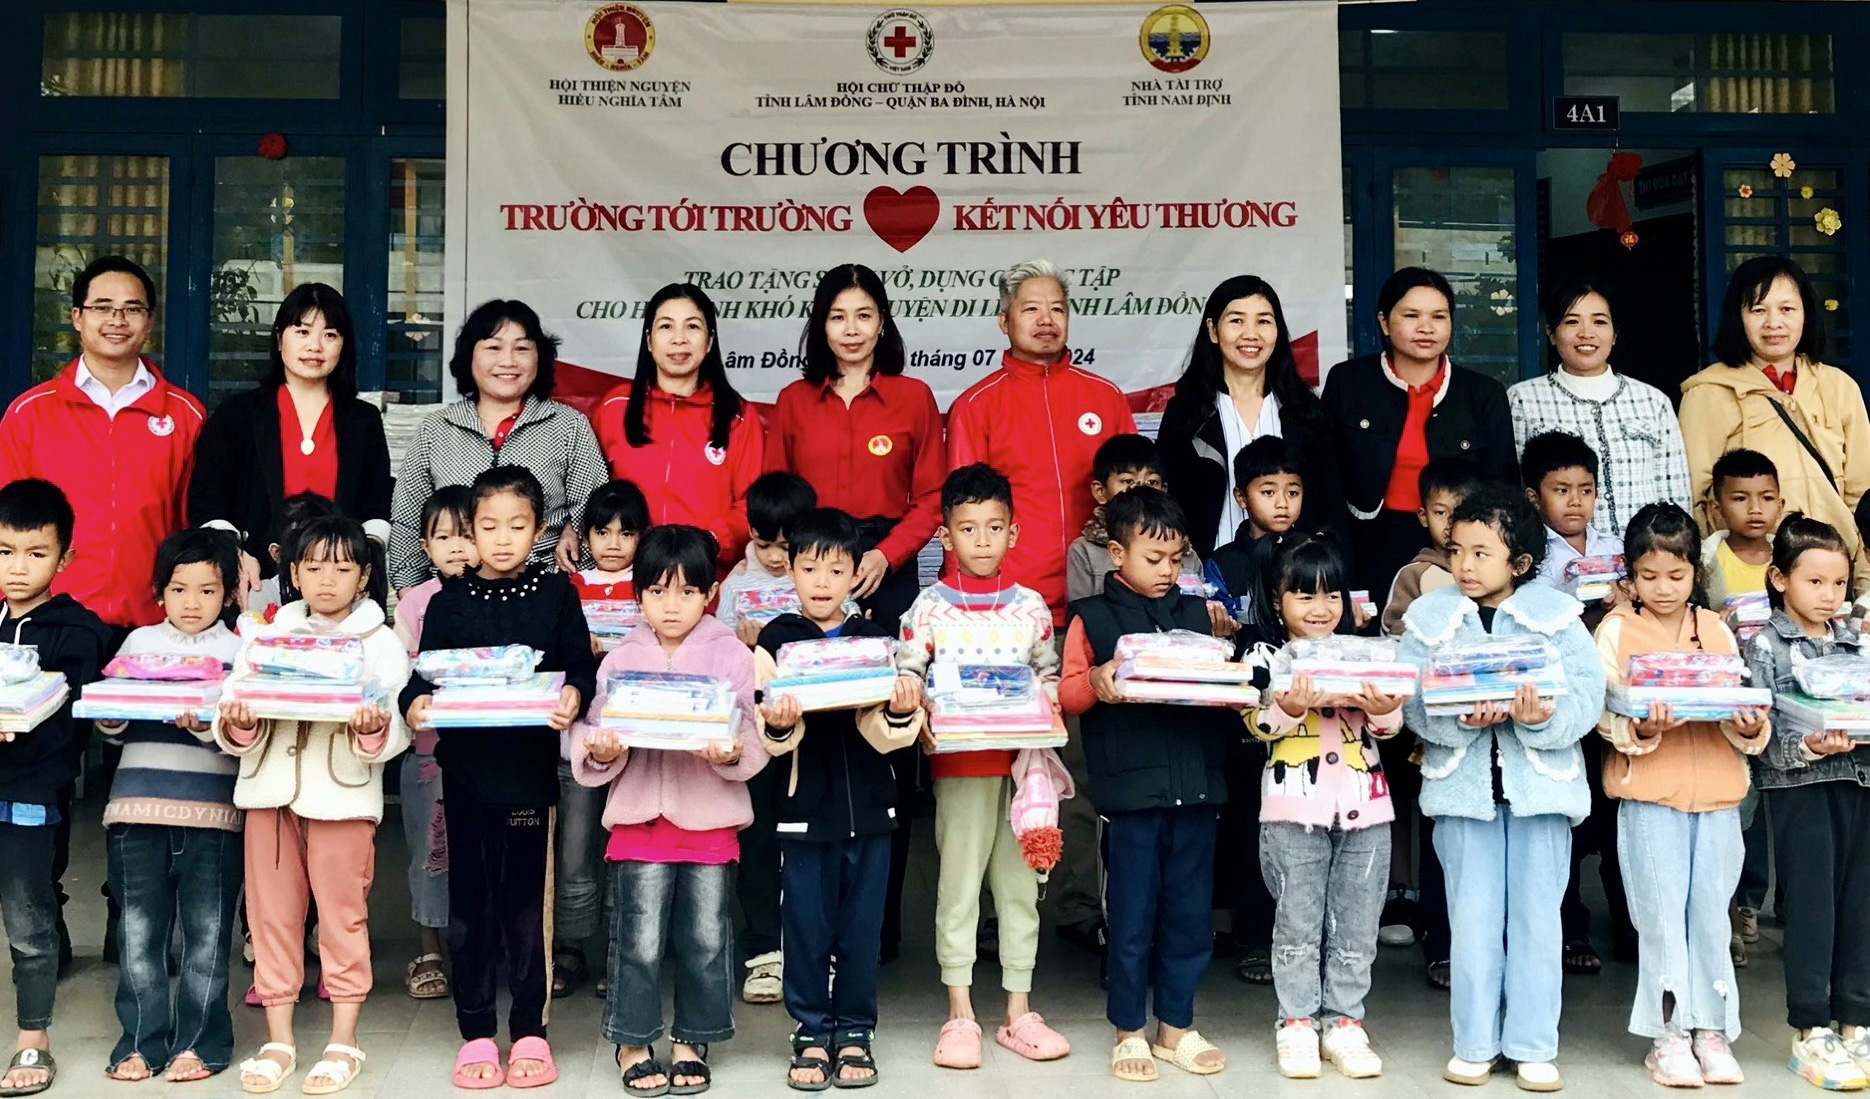 Di Linh: Tổ chức Chương trình Trường tới trường kết nối yêu thương